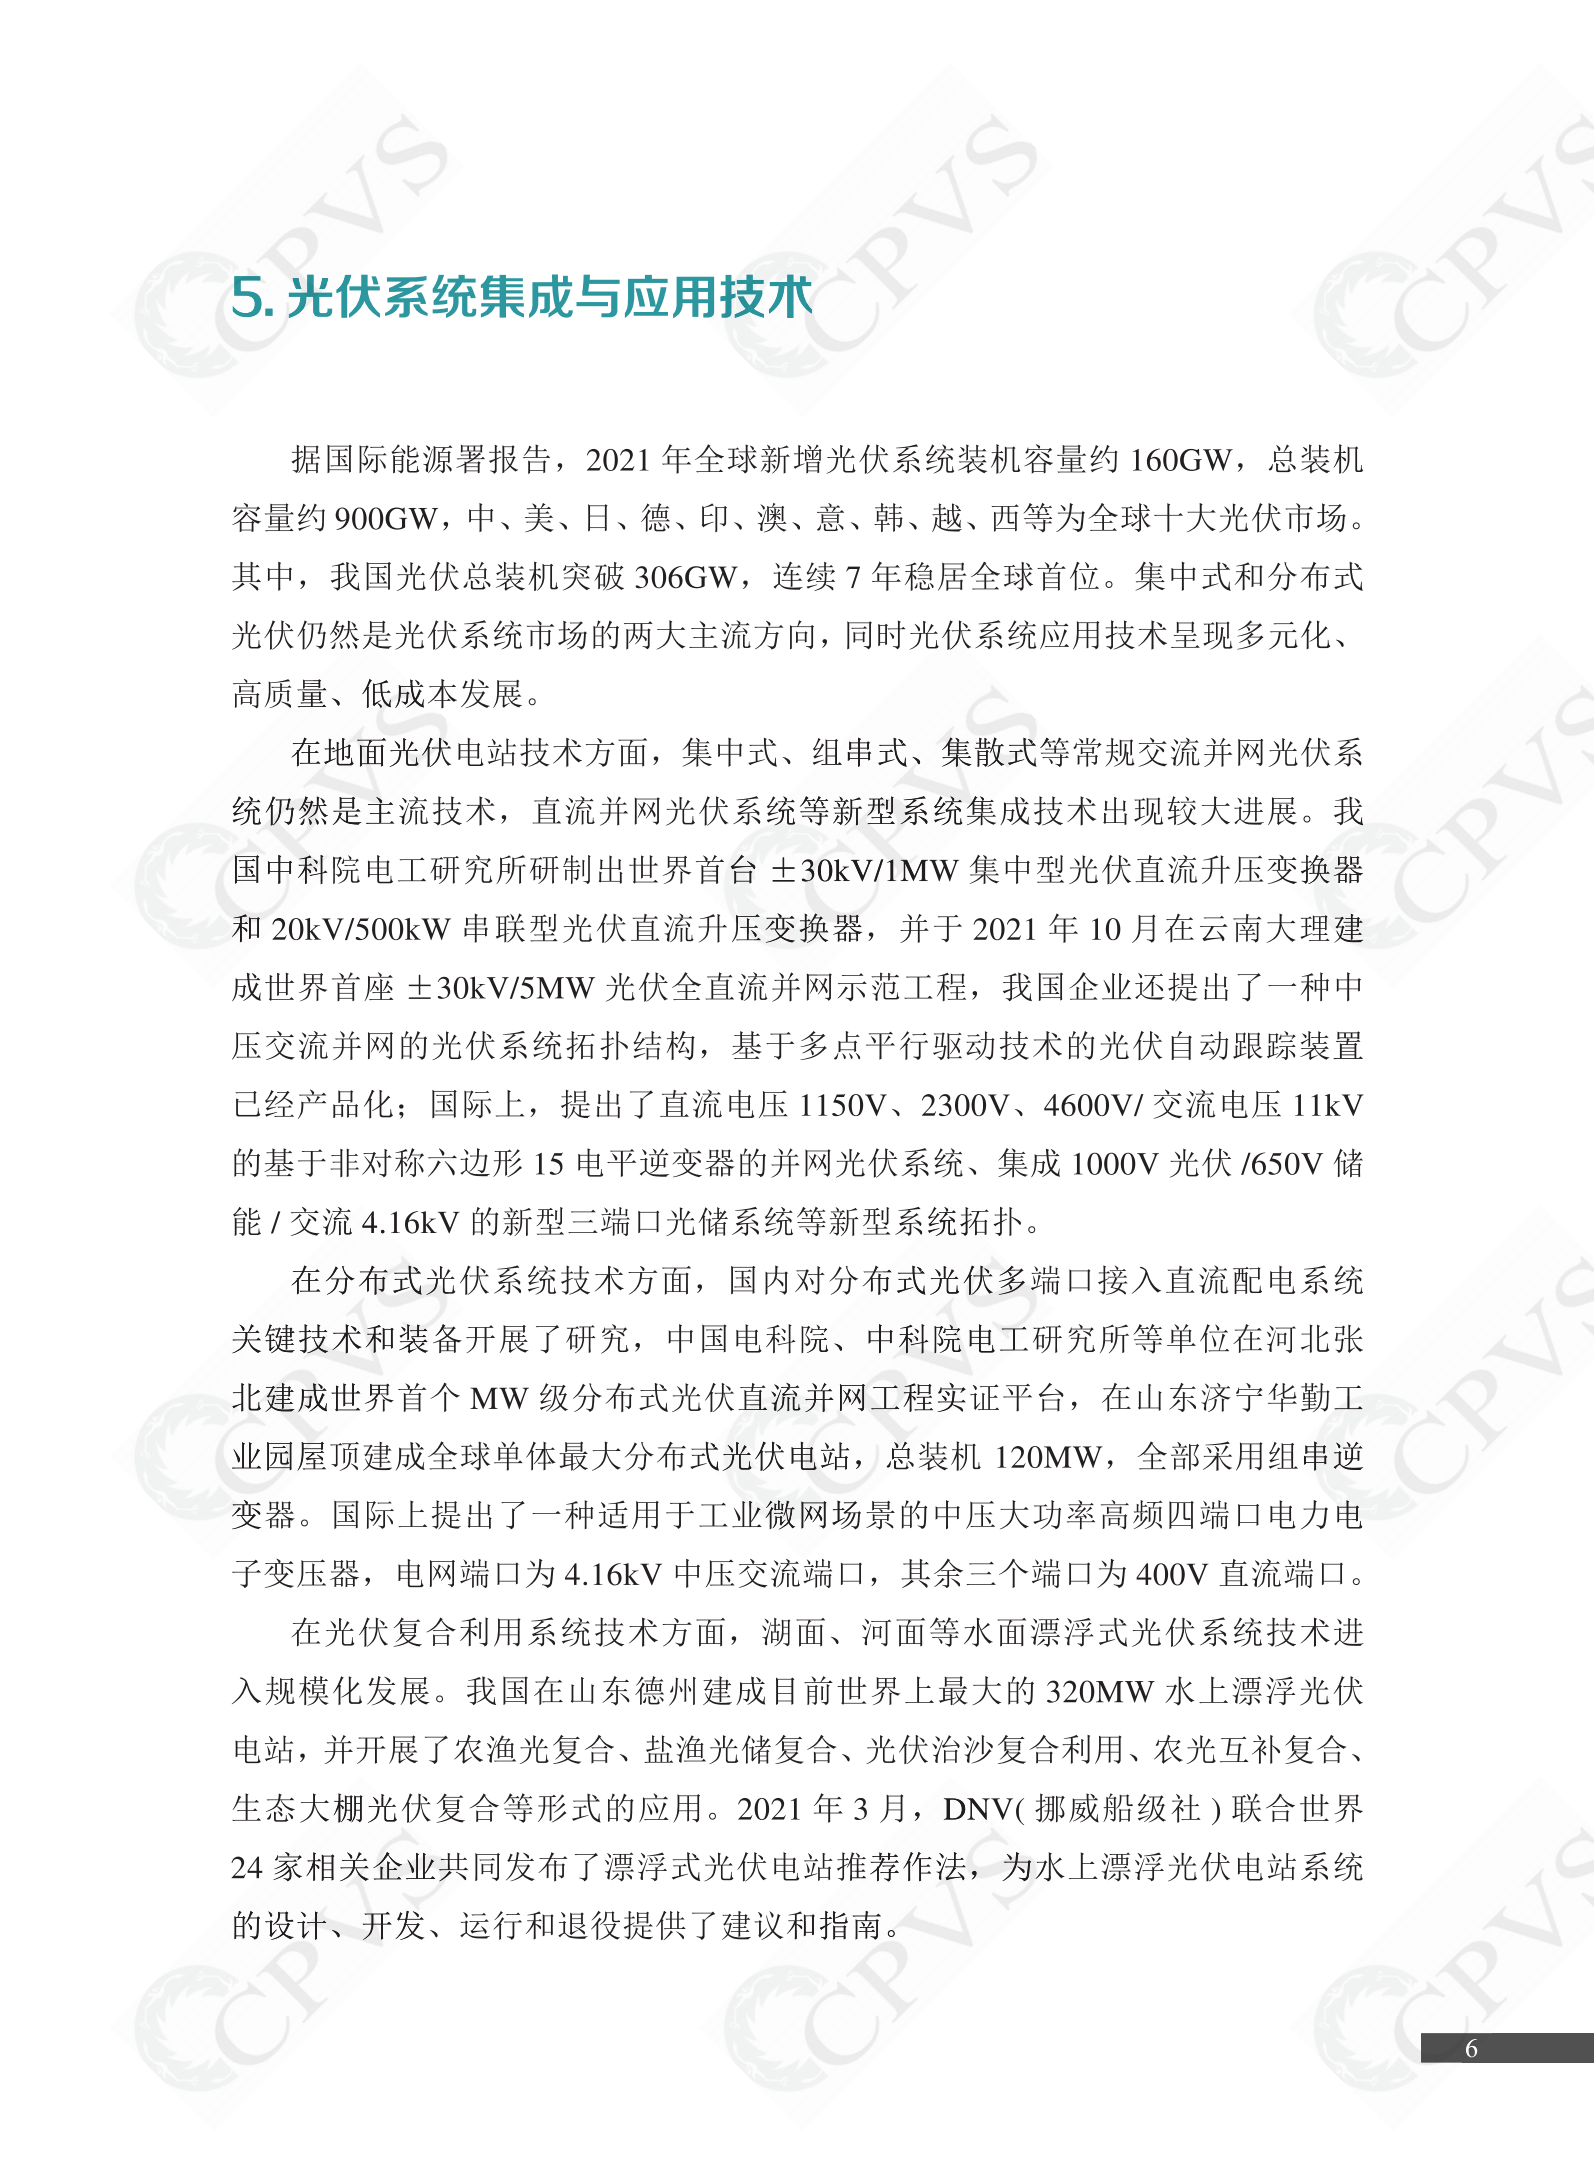 2022年中国光伏技术发展报告简版(1)_09.png